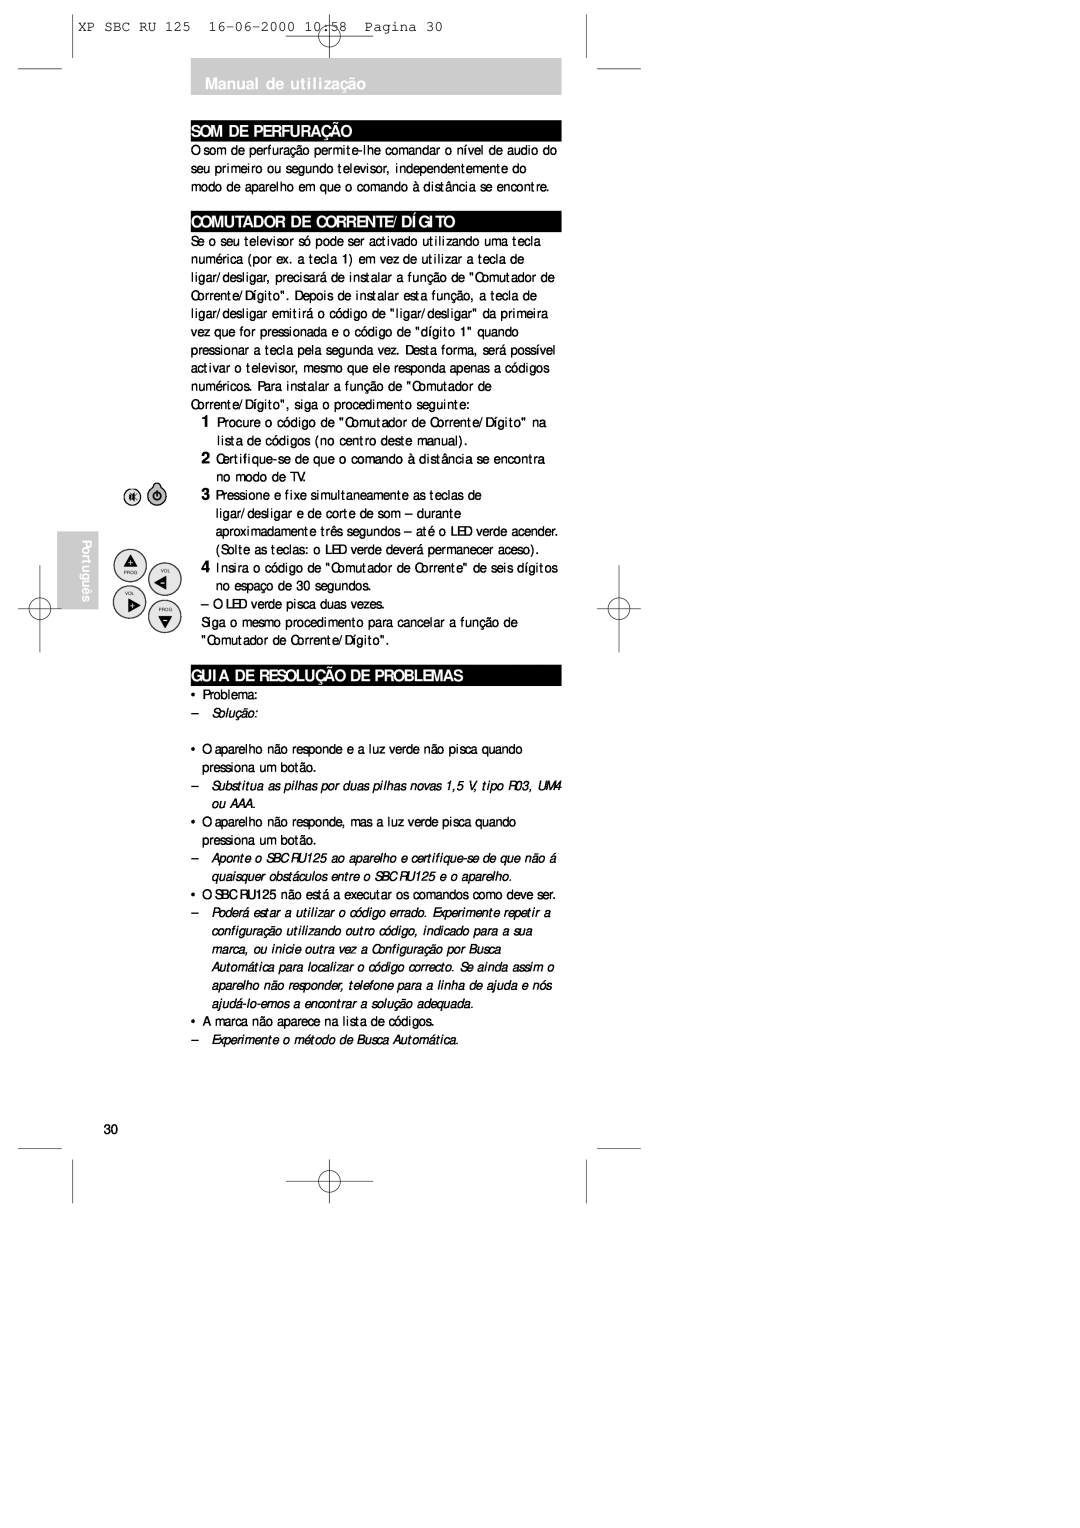 Philips RU125 manual Manual de utilização SOM DE PERFURAÇÃO, Comutador De Corrente/Dígito, Guia De Resolução De Problemas 